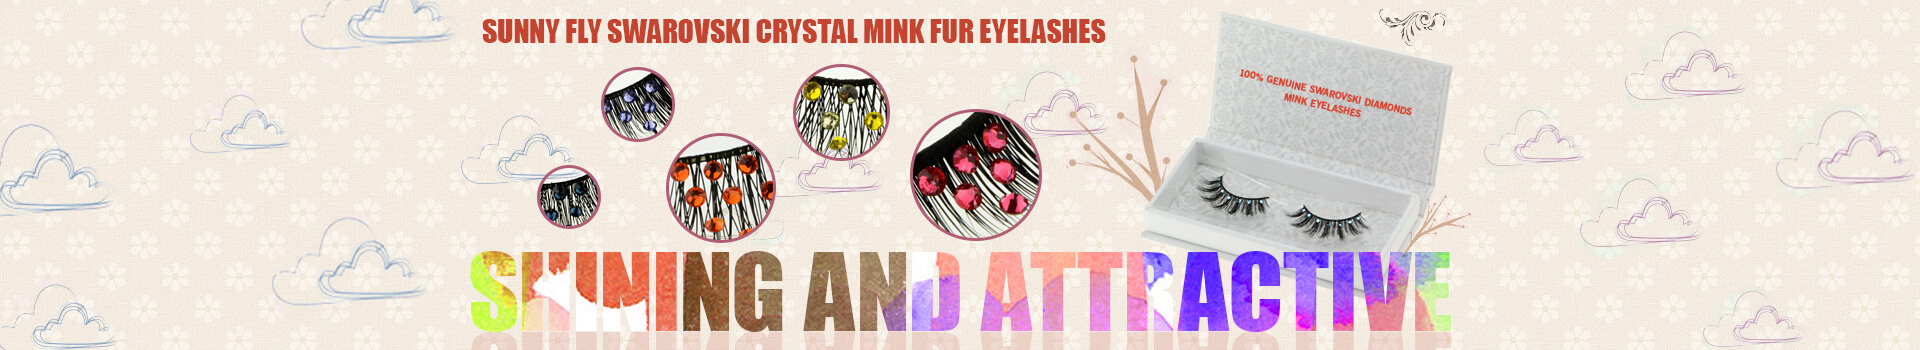 Swarovski Crystal Mink Fur Eyelashes MS37